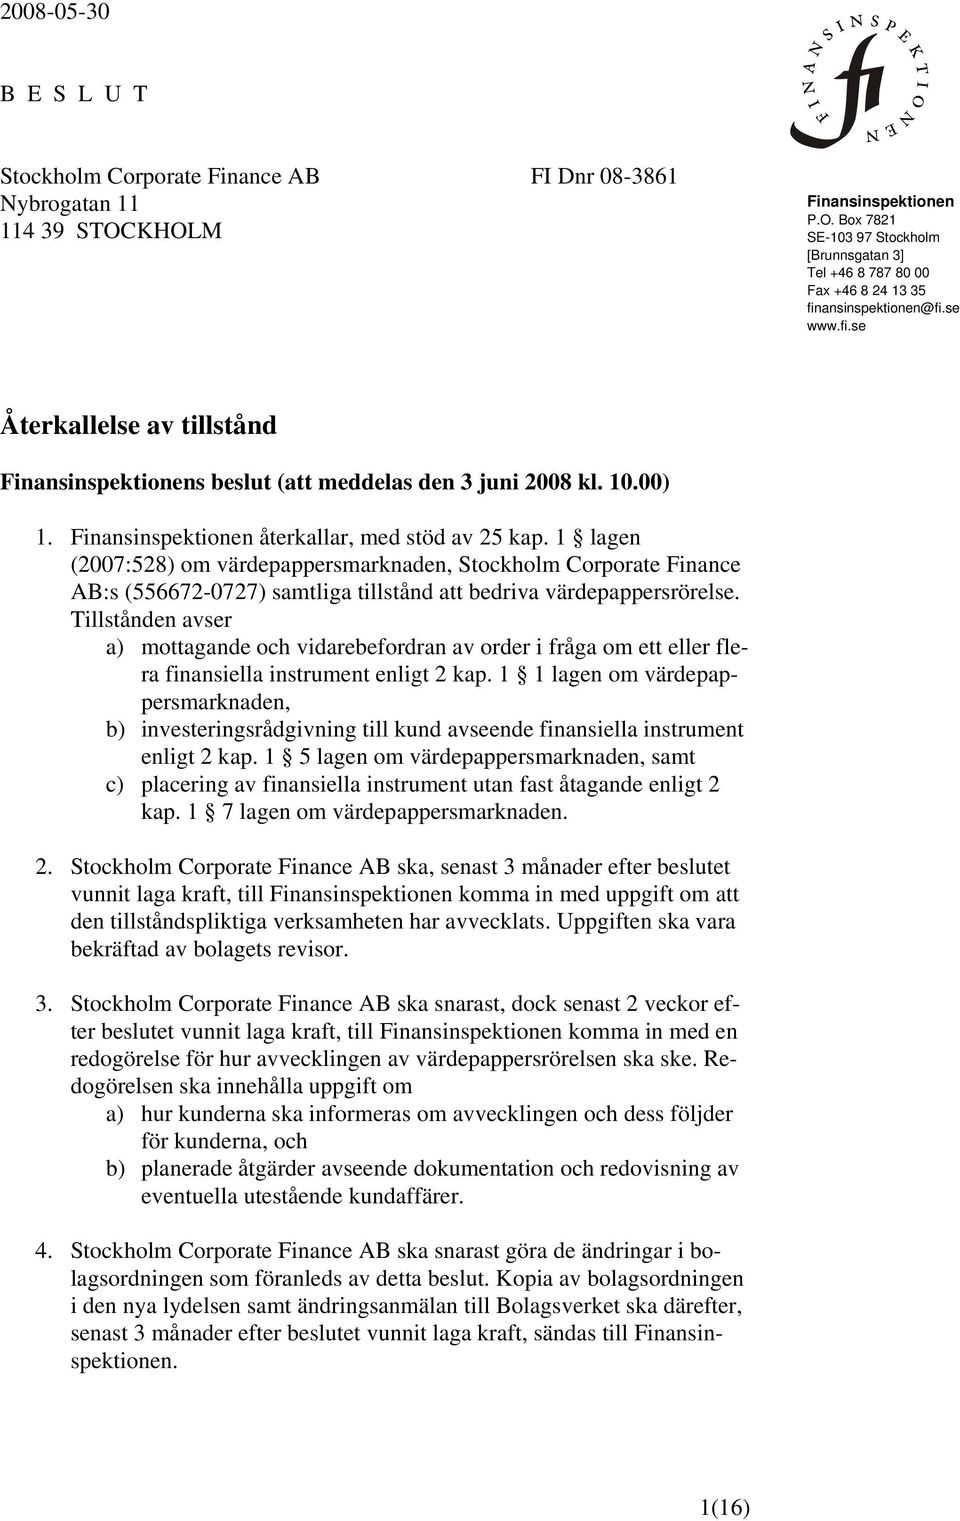 1 lagen (2007:528) om värdepappersmarknaden, Stockholm Corporate Finance AB:s (556672-0727) samtliga tillstånd att bedriva värdepappersrörelse.